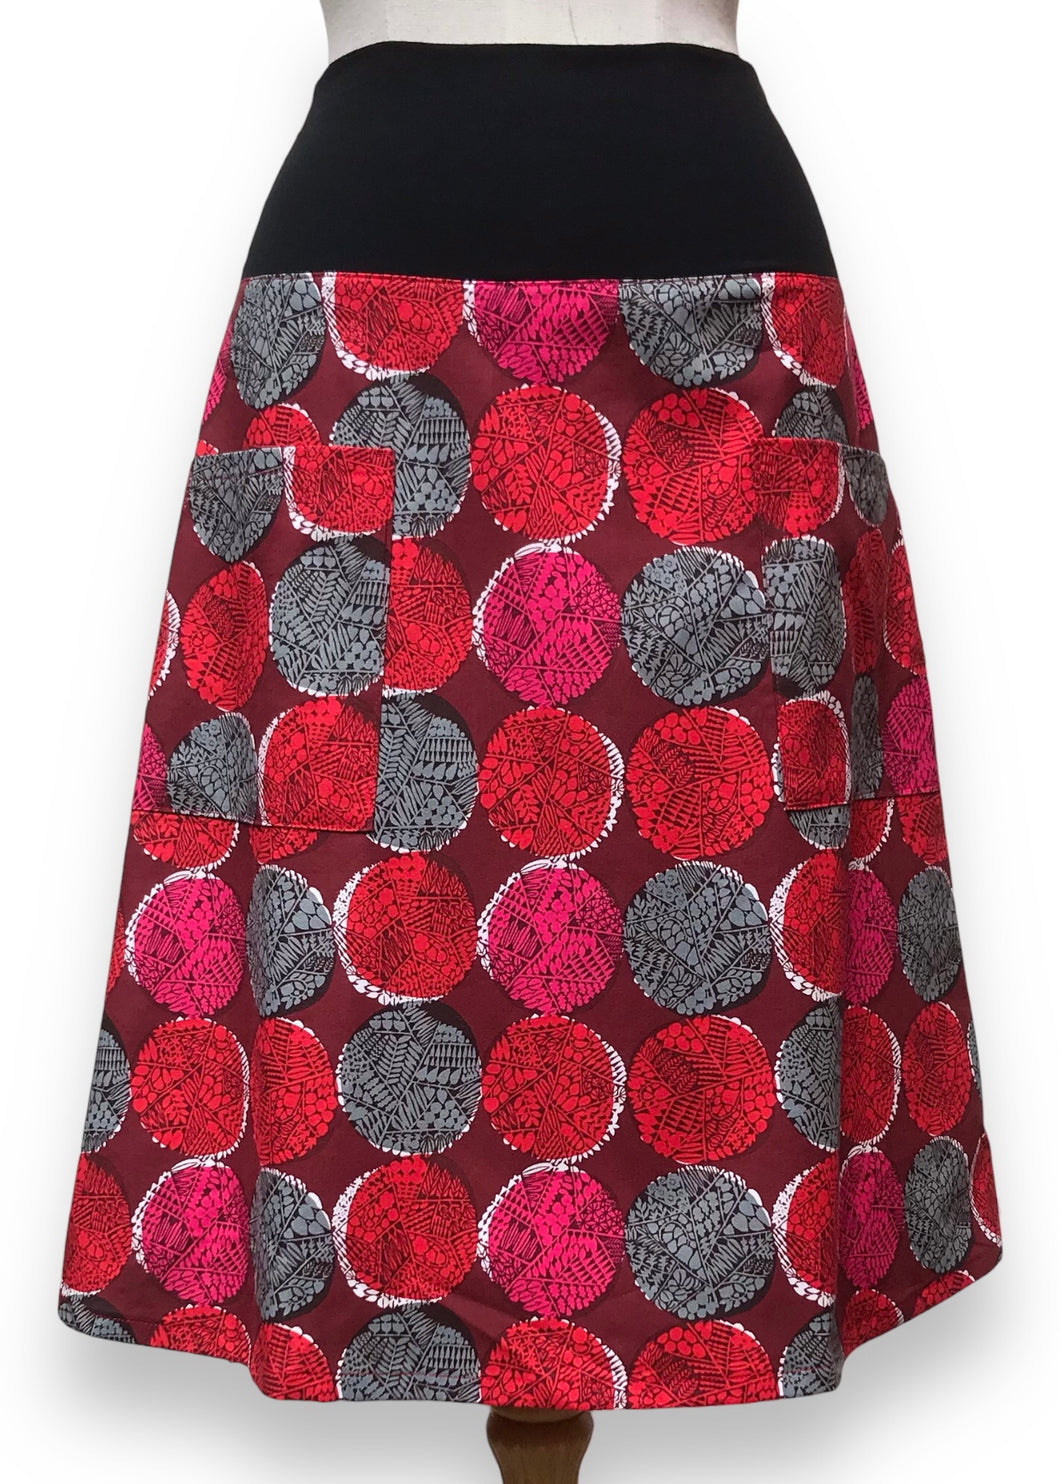 Flare Skirt - Batik/Red